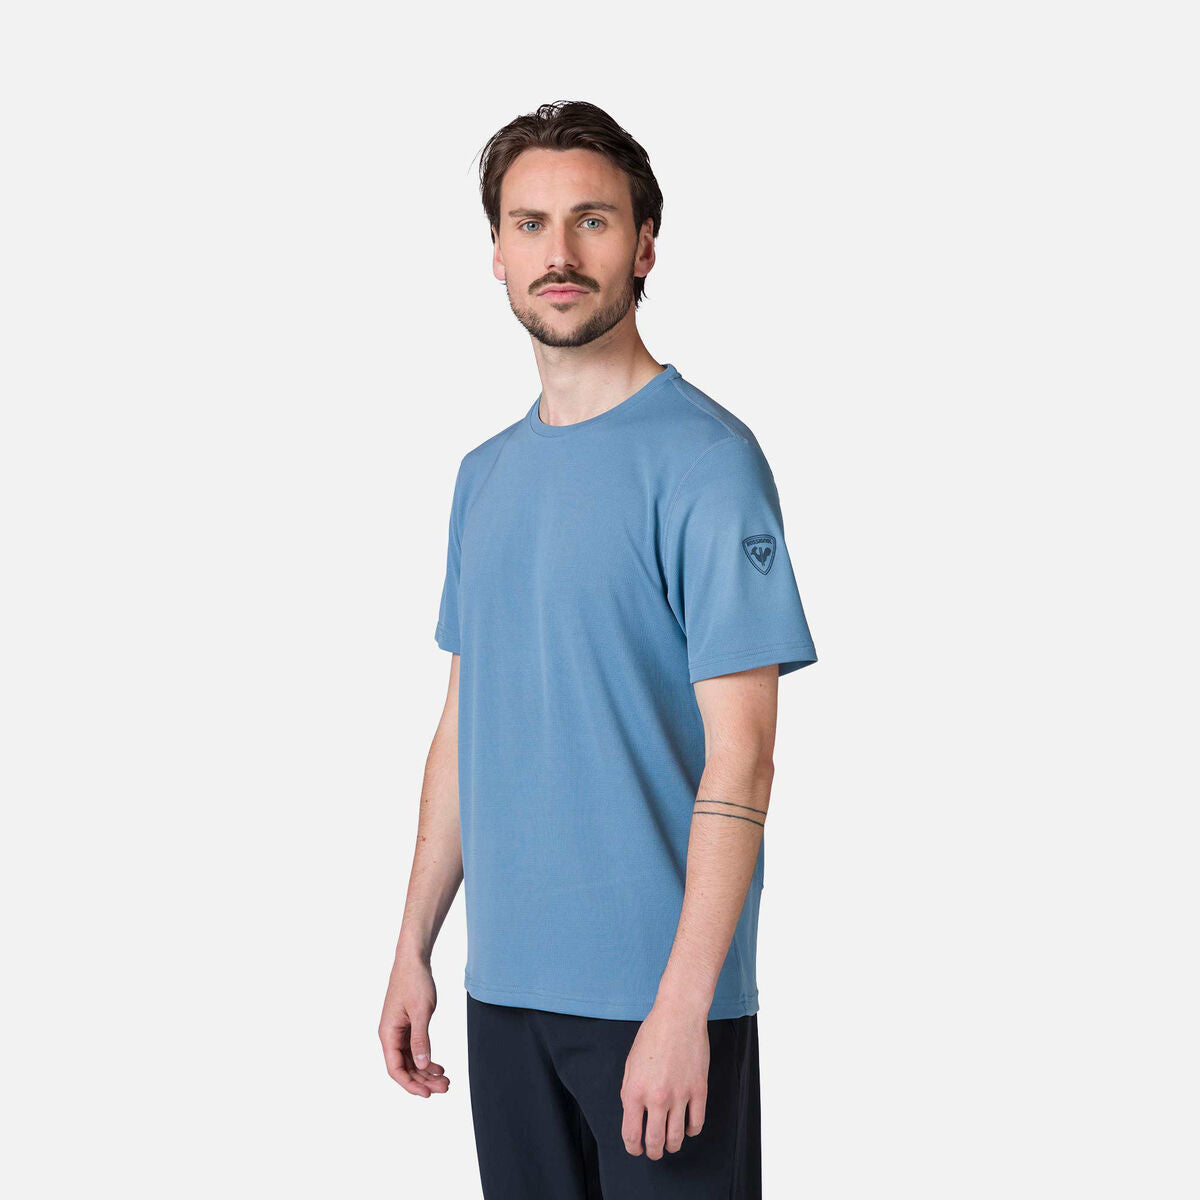 Men's Plain Hiking T-Shirt